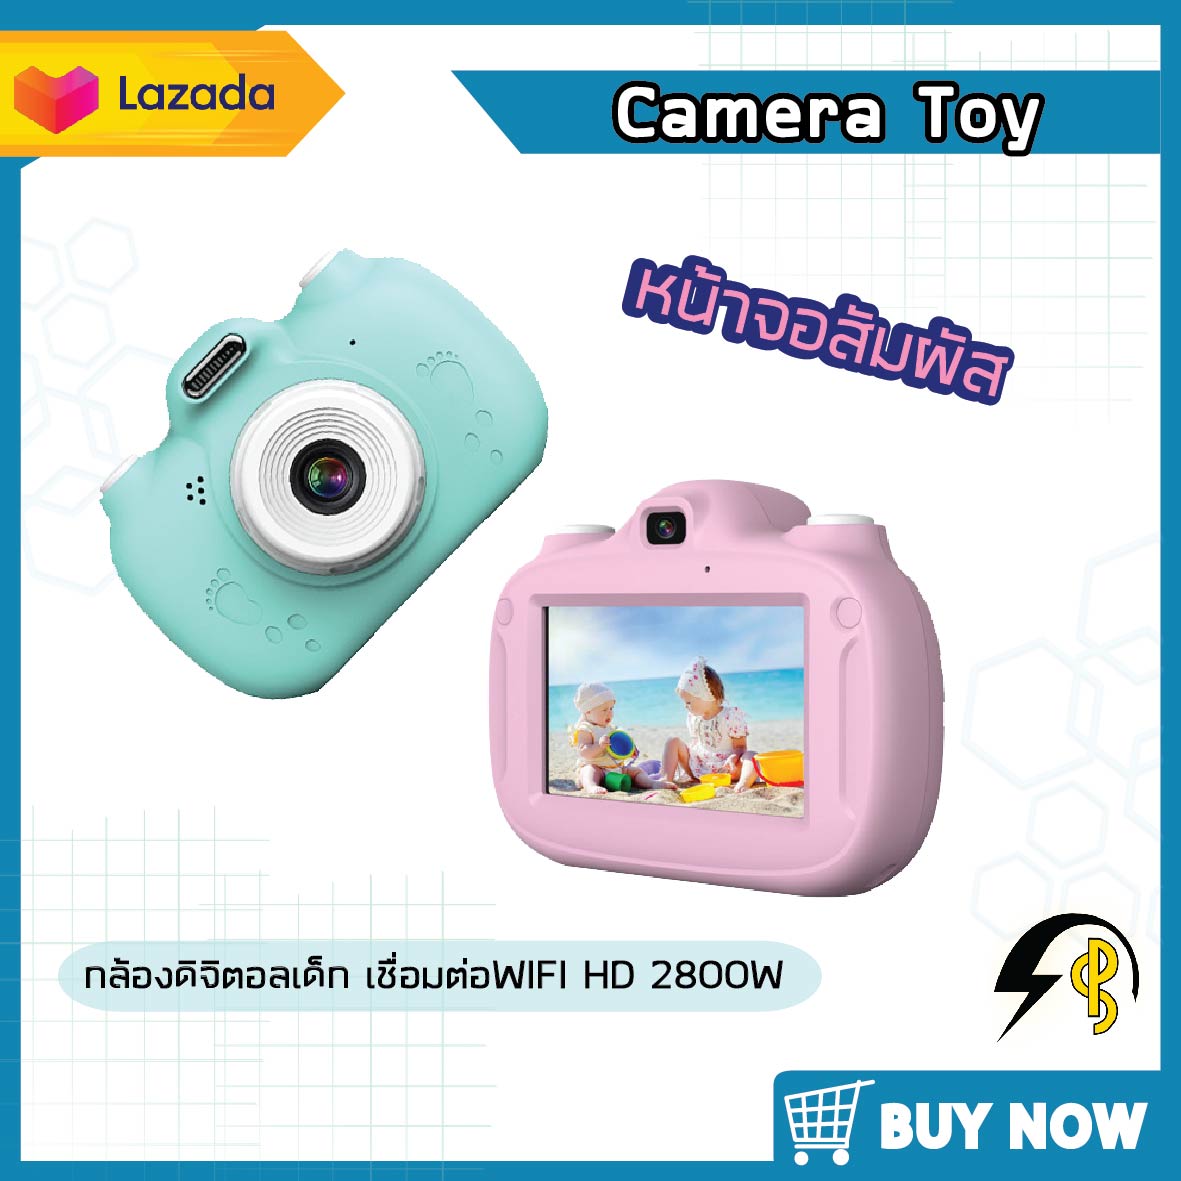 กล้องถ่ายรูปสำหรับเด็ก เชื่อมต่อ wifi ได้ หน้าจอสัมผัส New dual-lens touch screen children